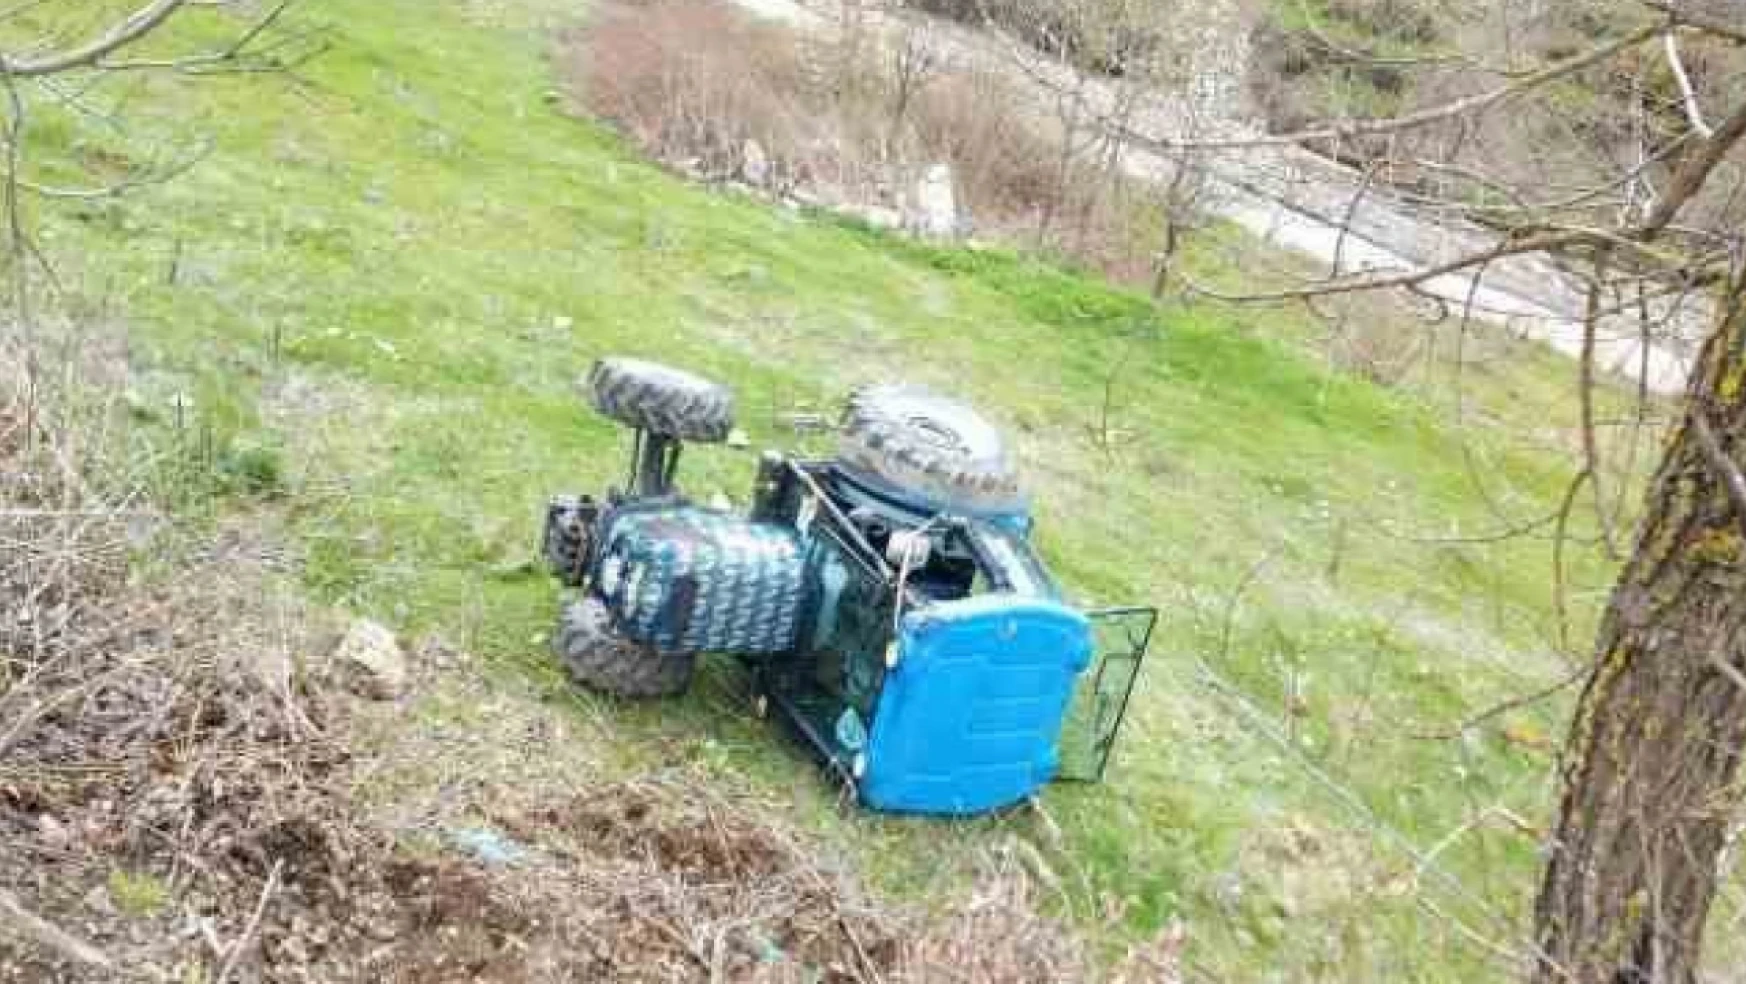 Kastamonu İhsangazi'de traktör kazası, 1 yaralı